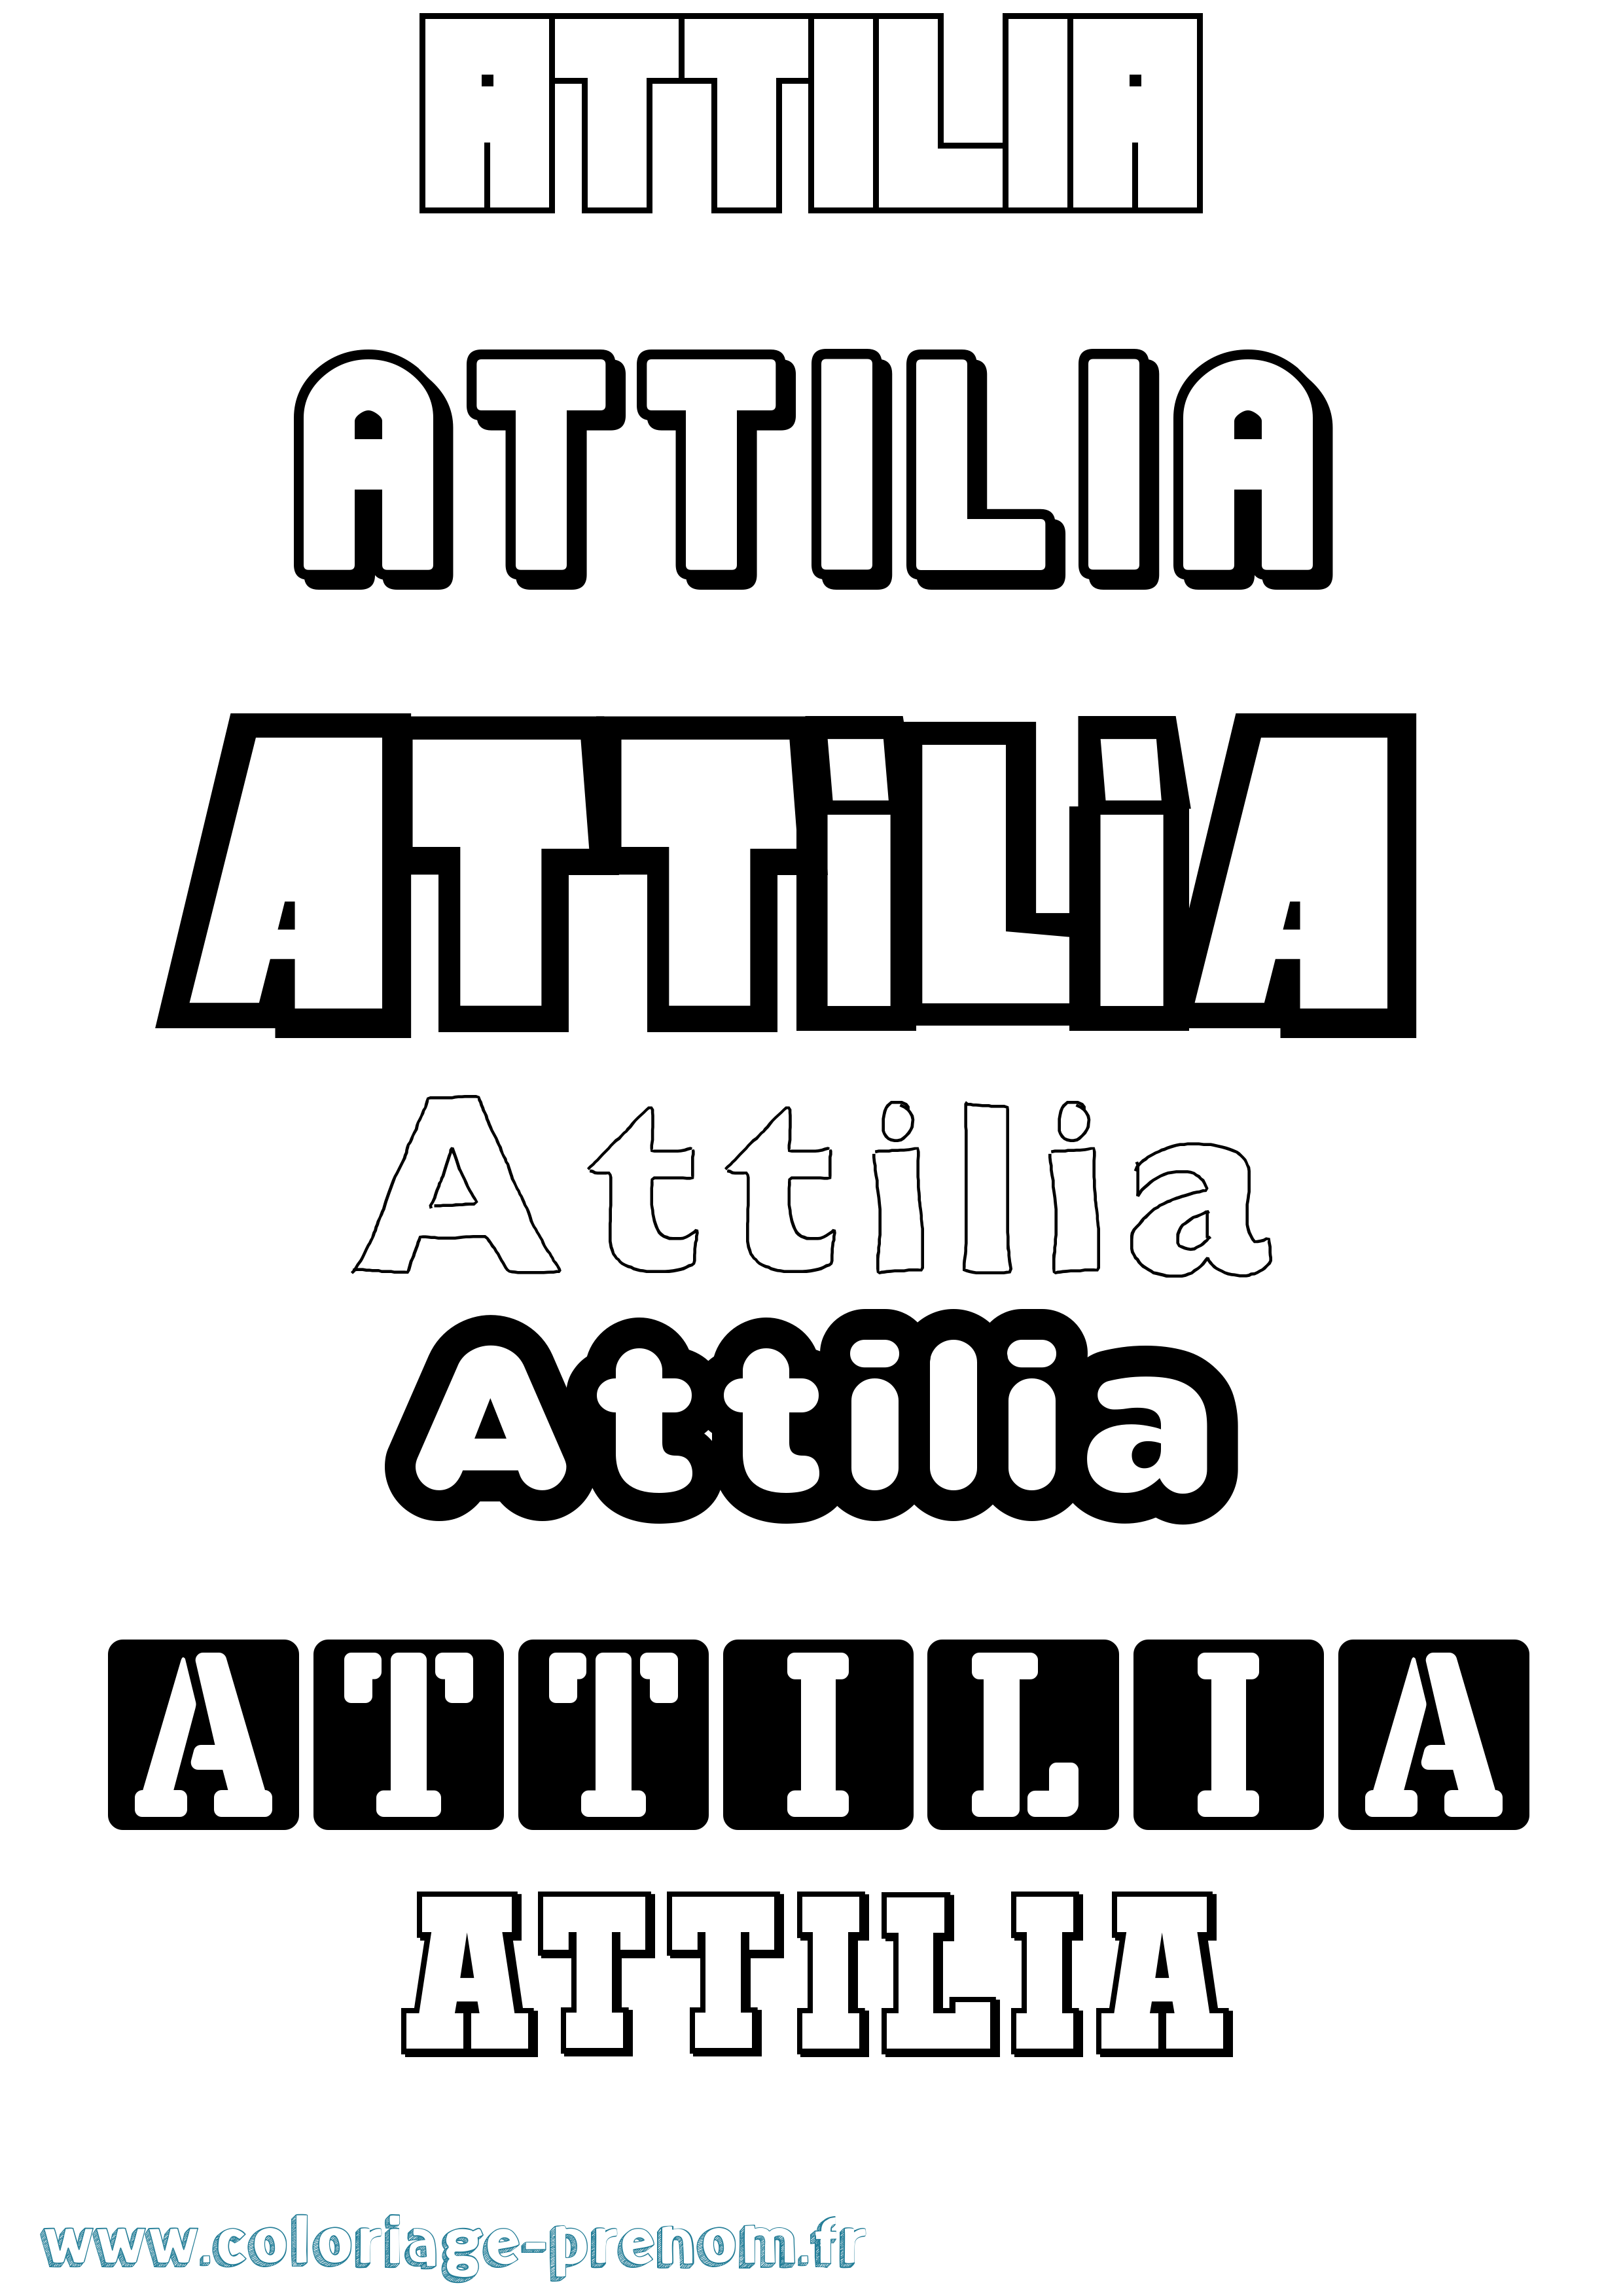 Coloriage prénom Attilia Simple